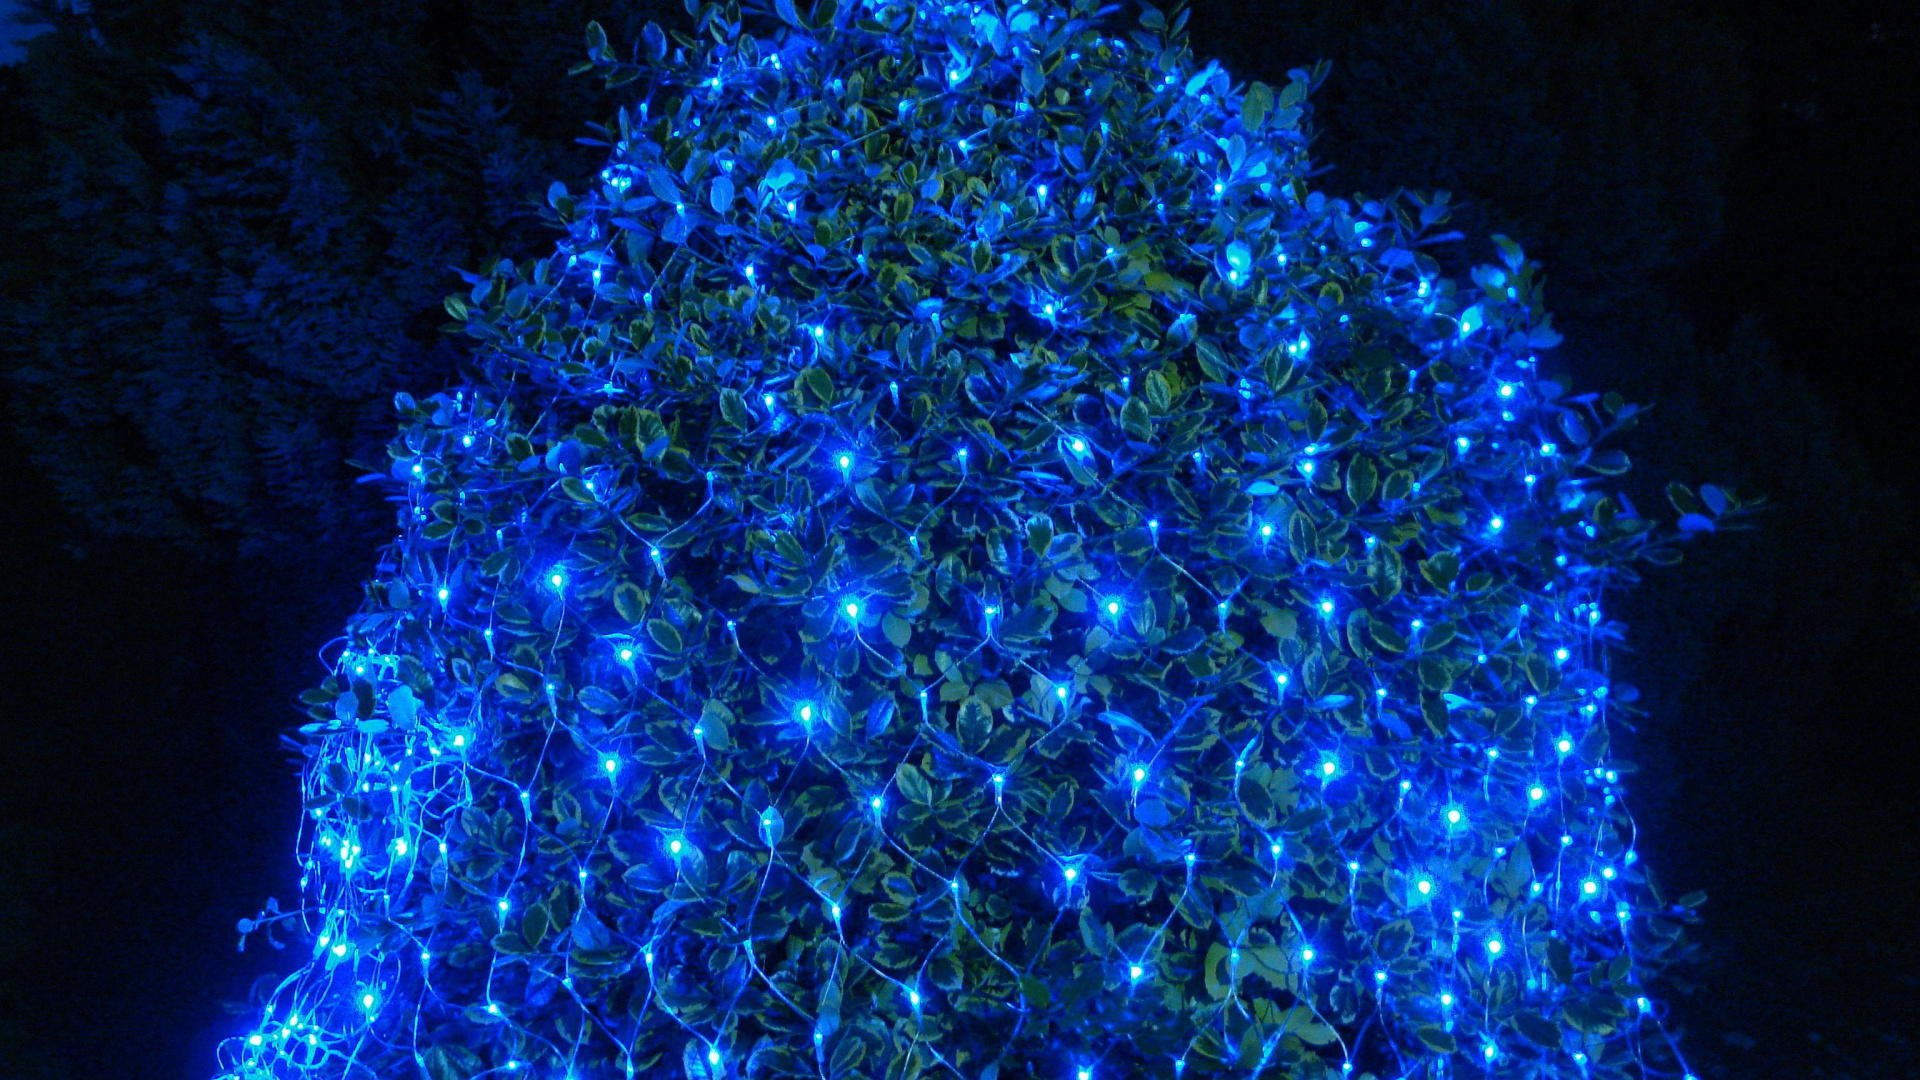 Led-Lampe, Weihnachtsbeleuchtung, Nachtlicht, Licht, Blau. Wallpaper in 1920x1080 Resolution